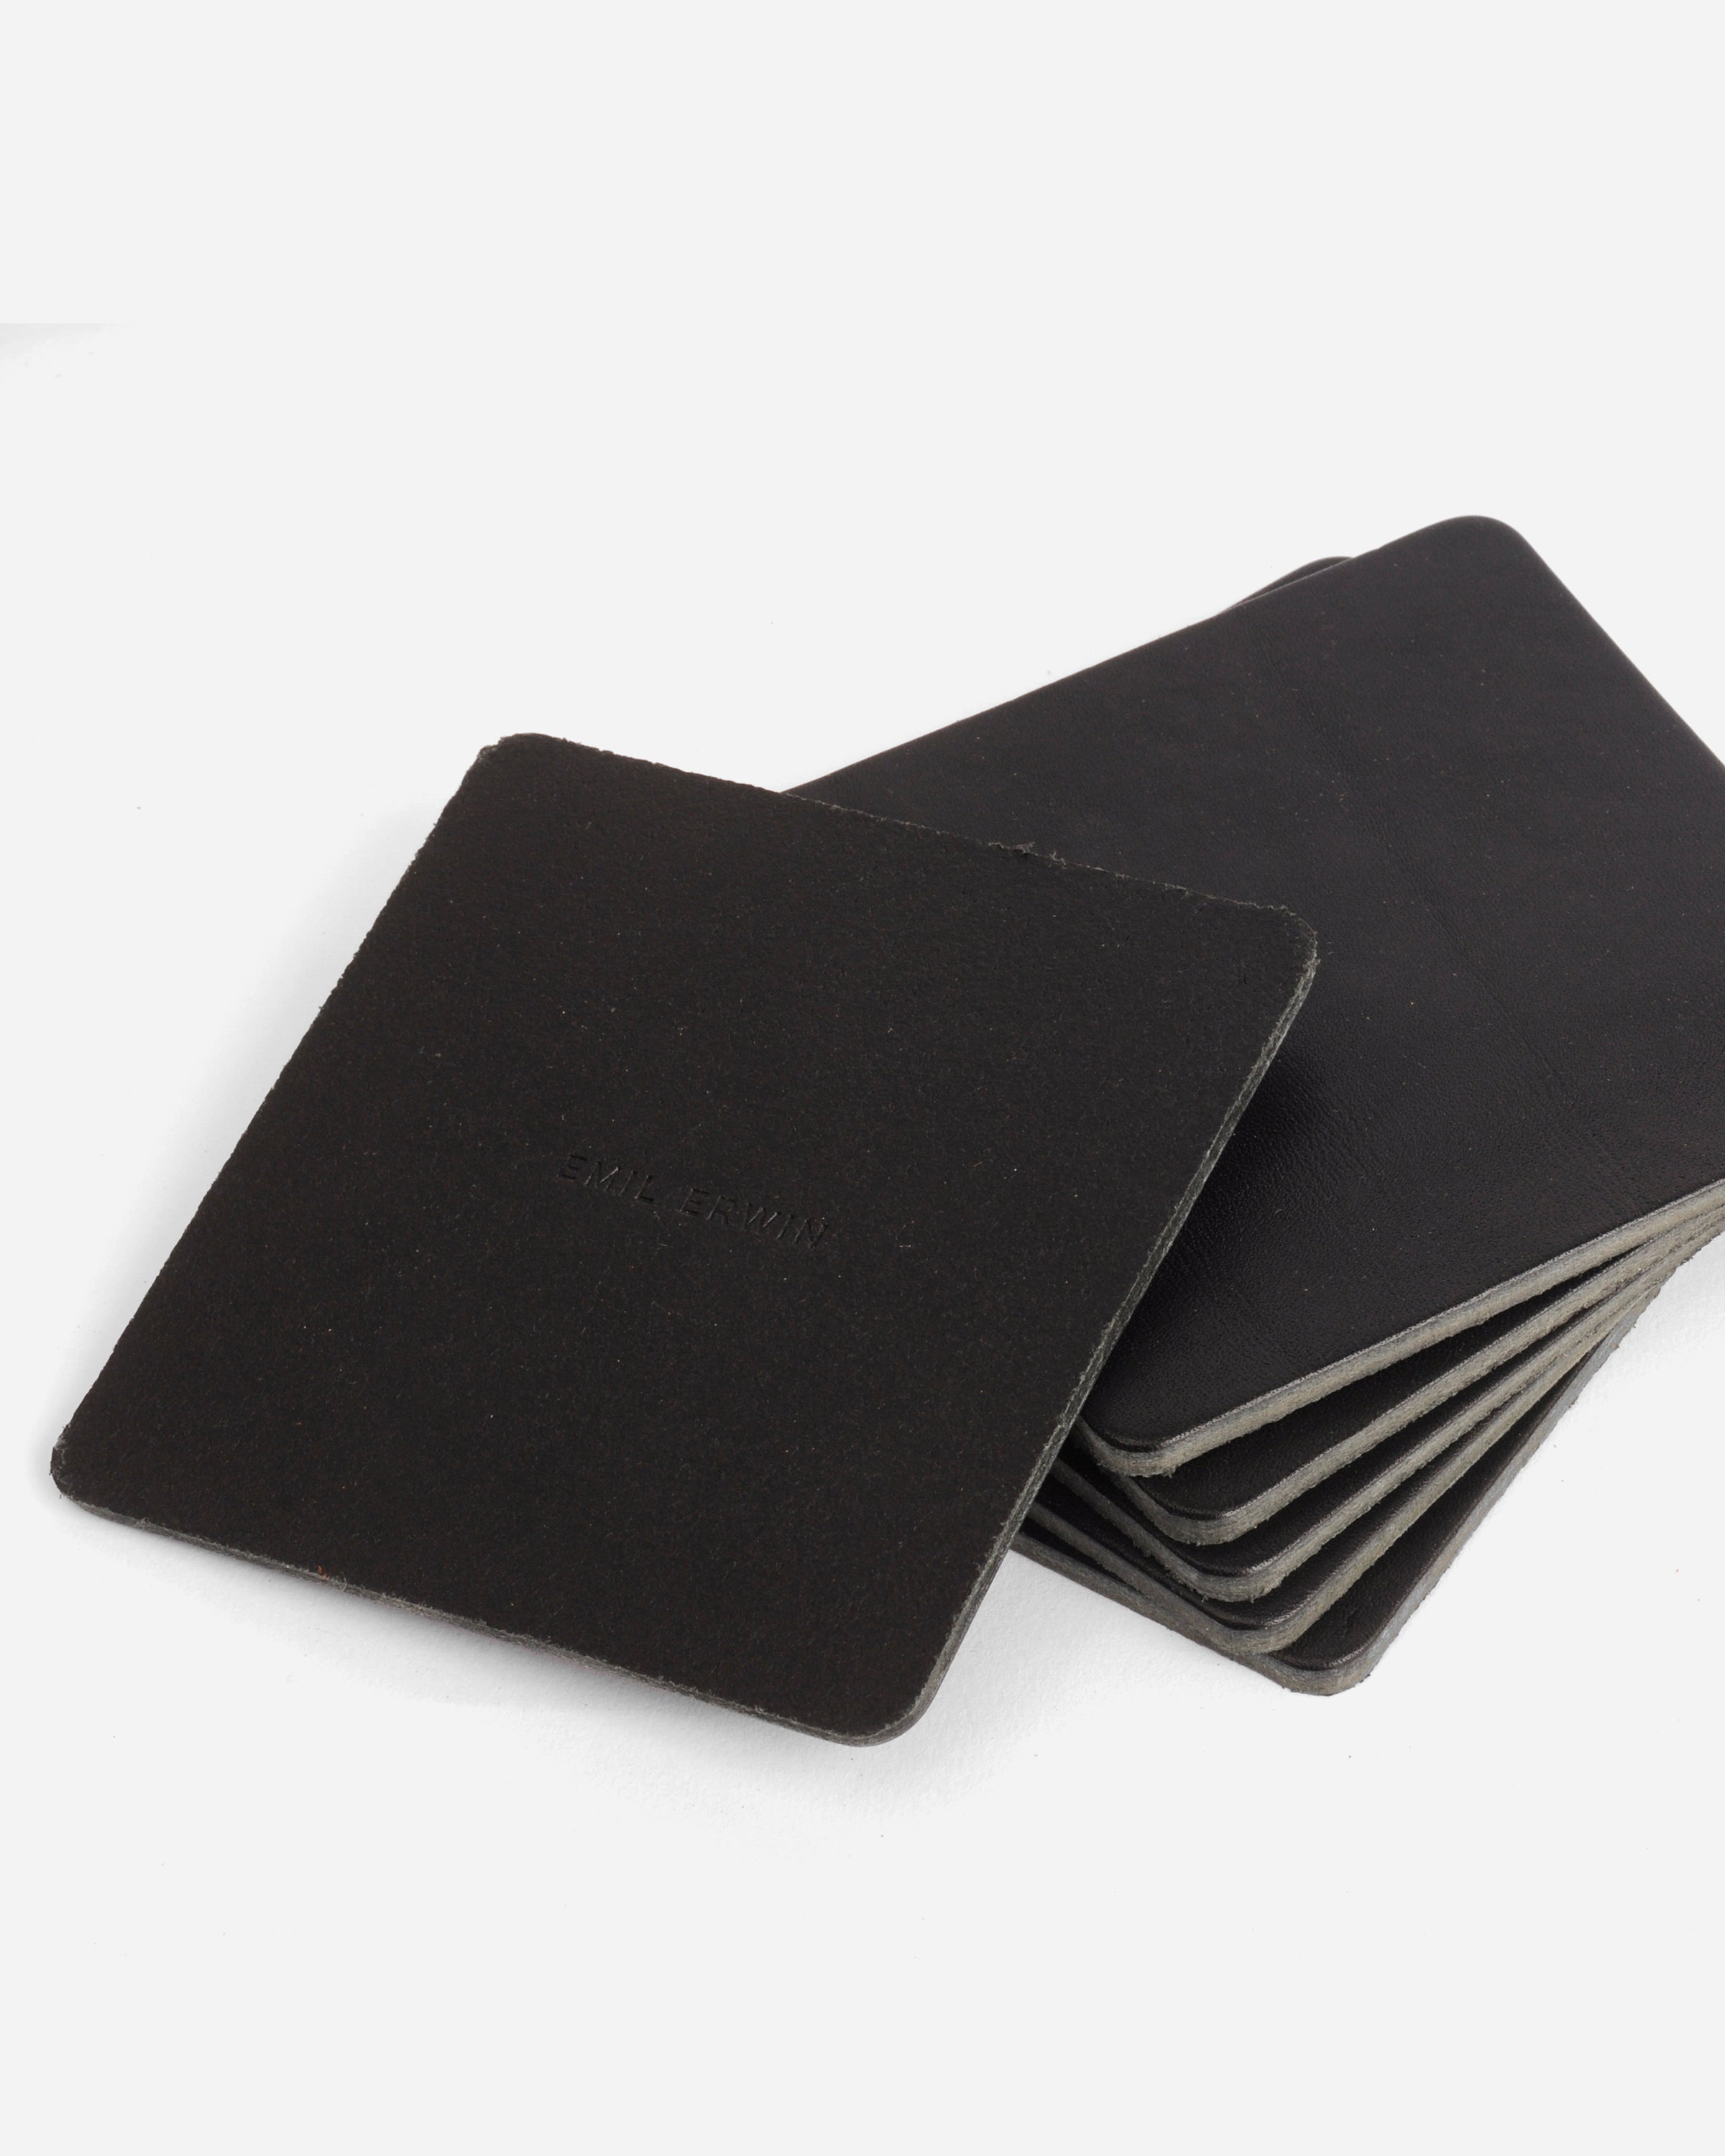 Black Veg Tan Leather Coasters - Square